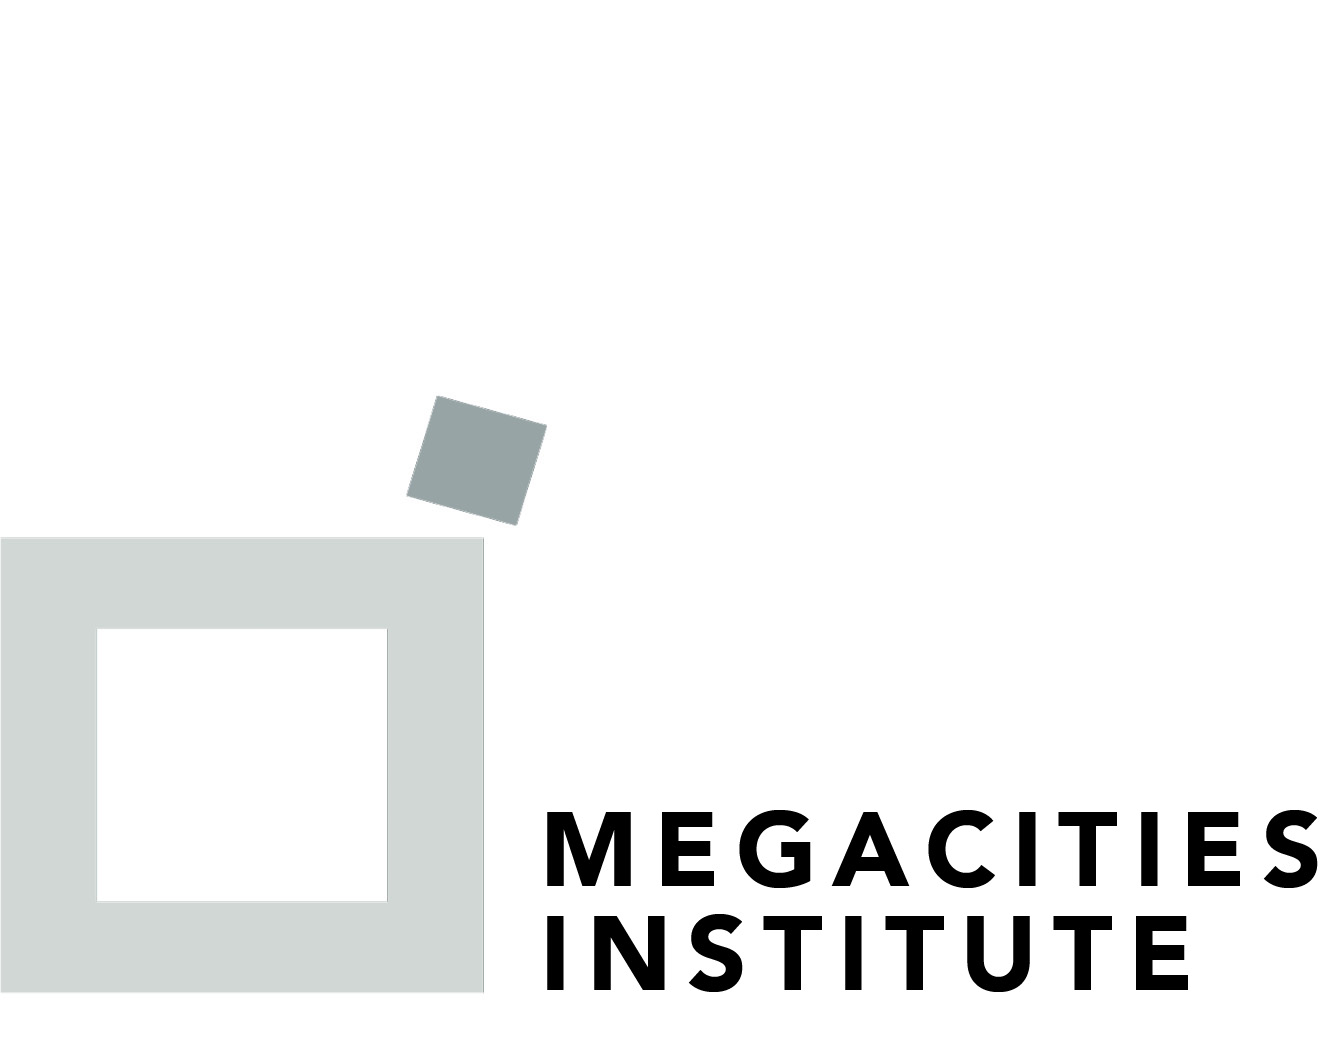 Megacities Institute